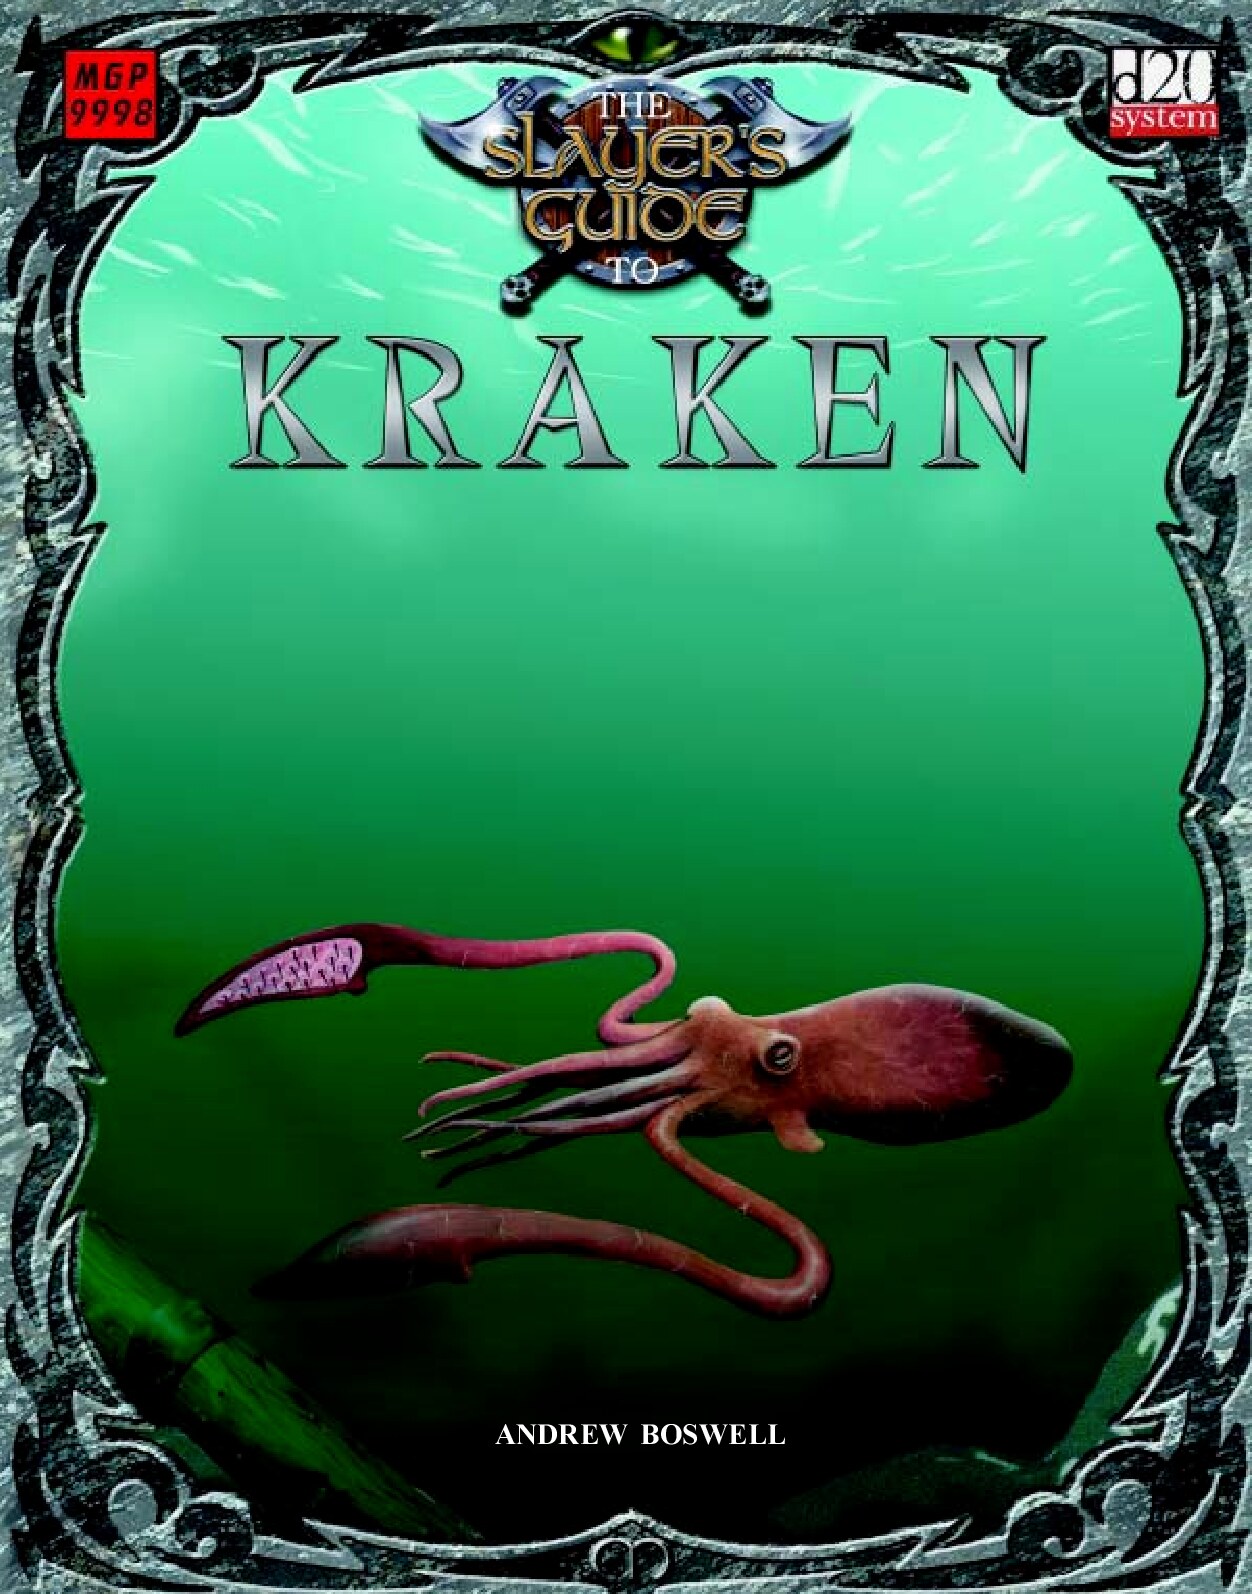 The Slayer's Guide to Kraken